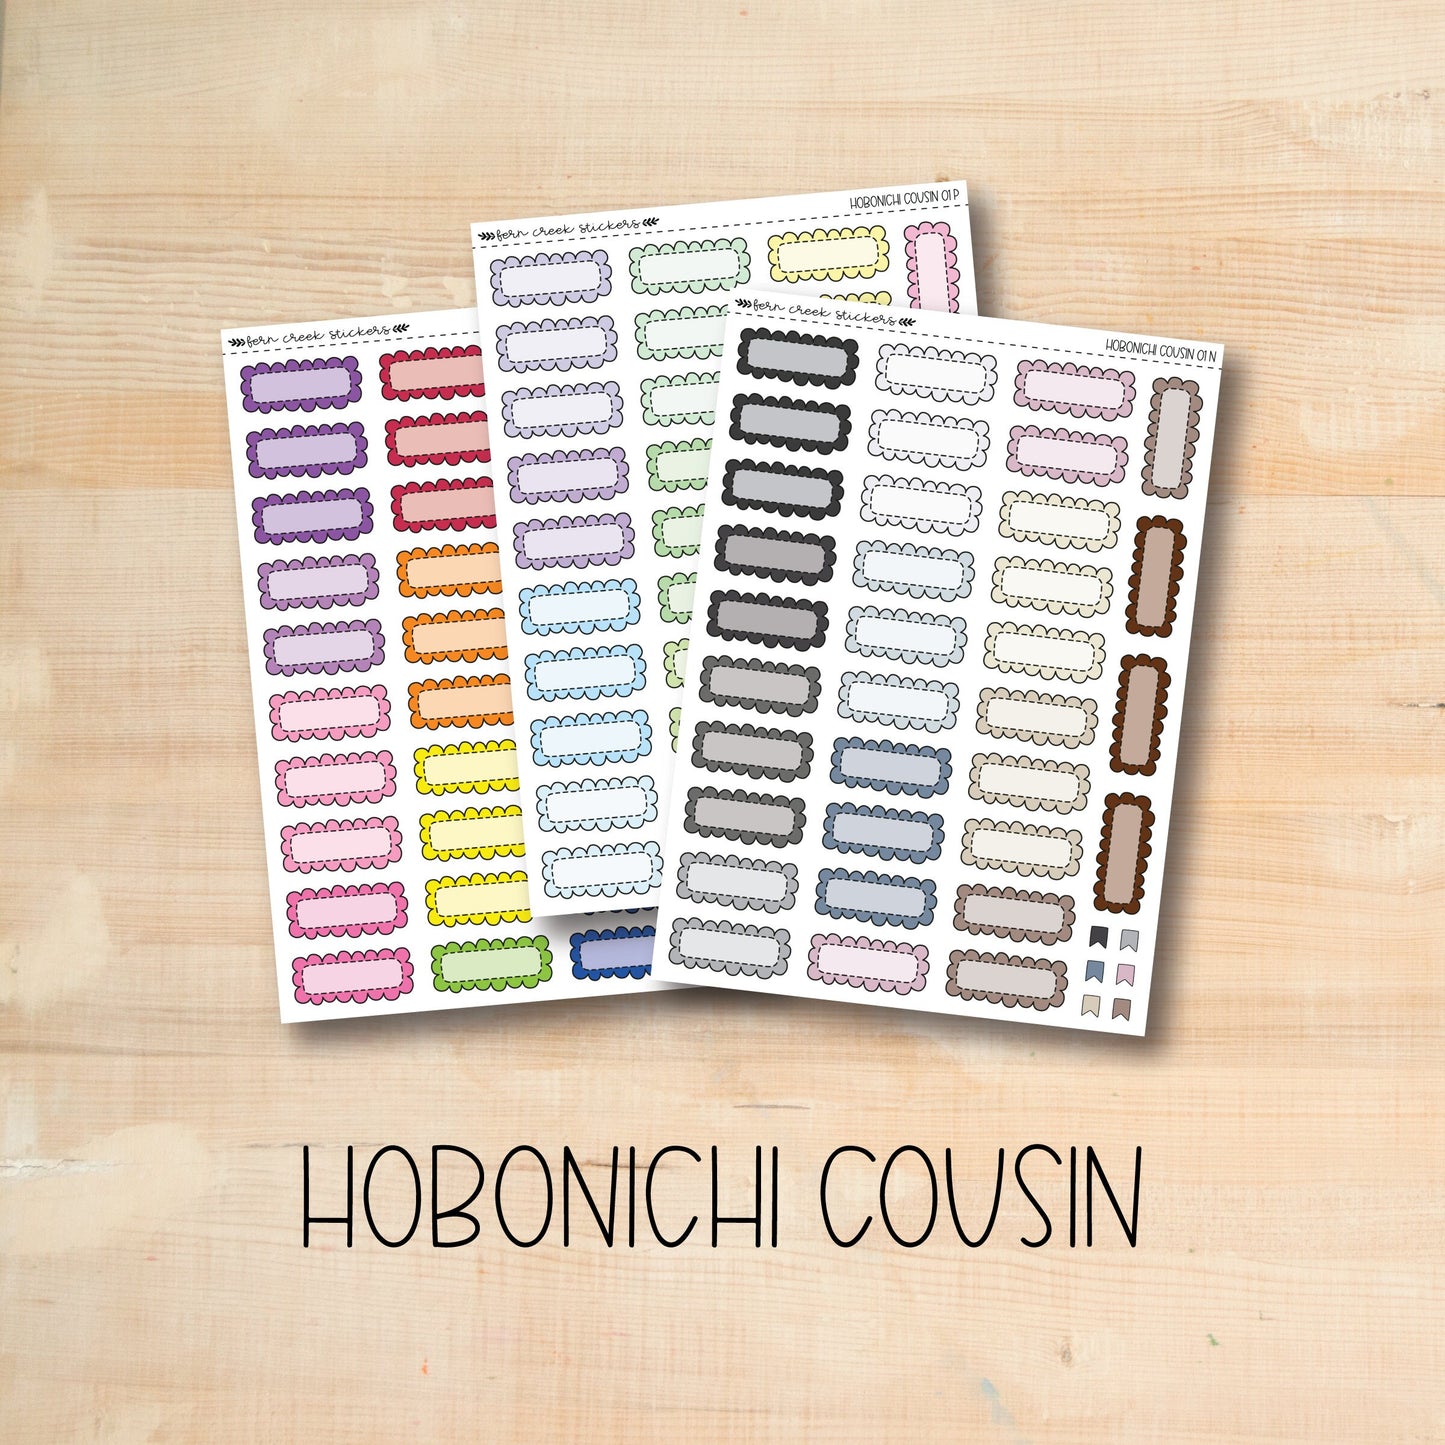 COUSIN-01 || Hobonichi Cousin Doodle Boxes